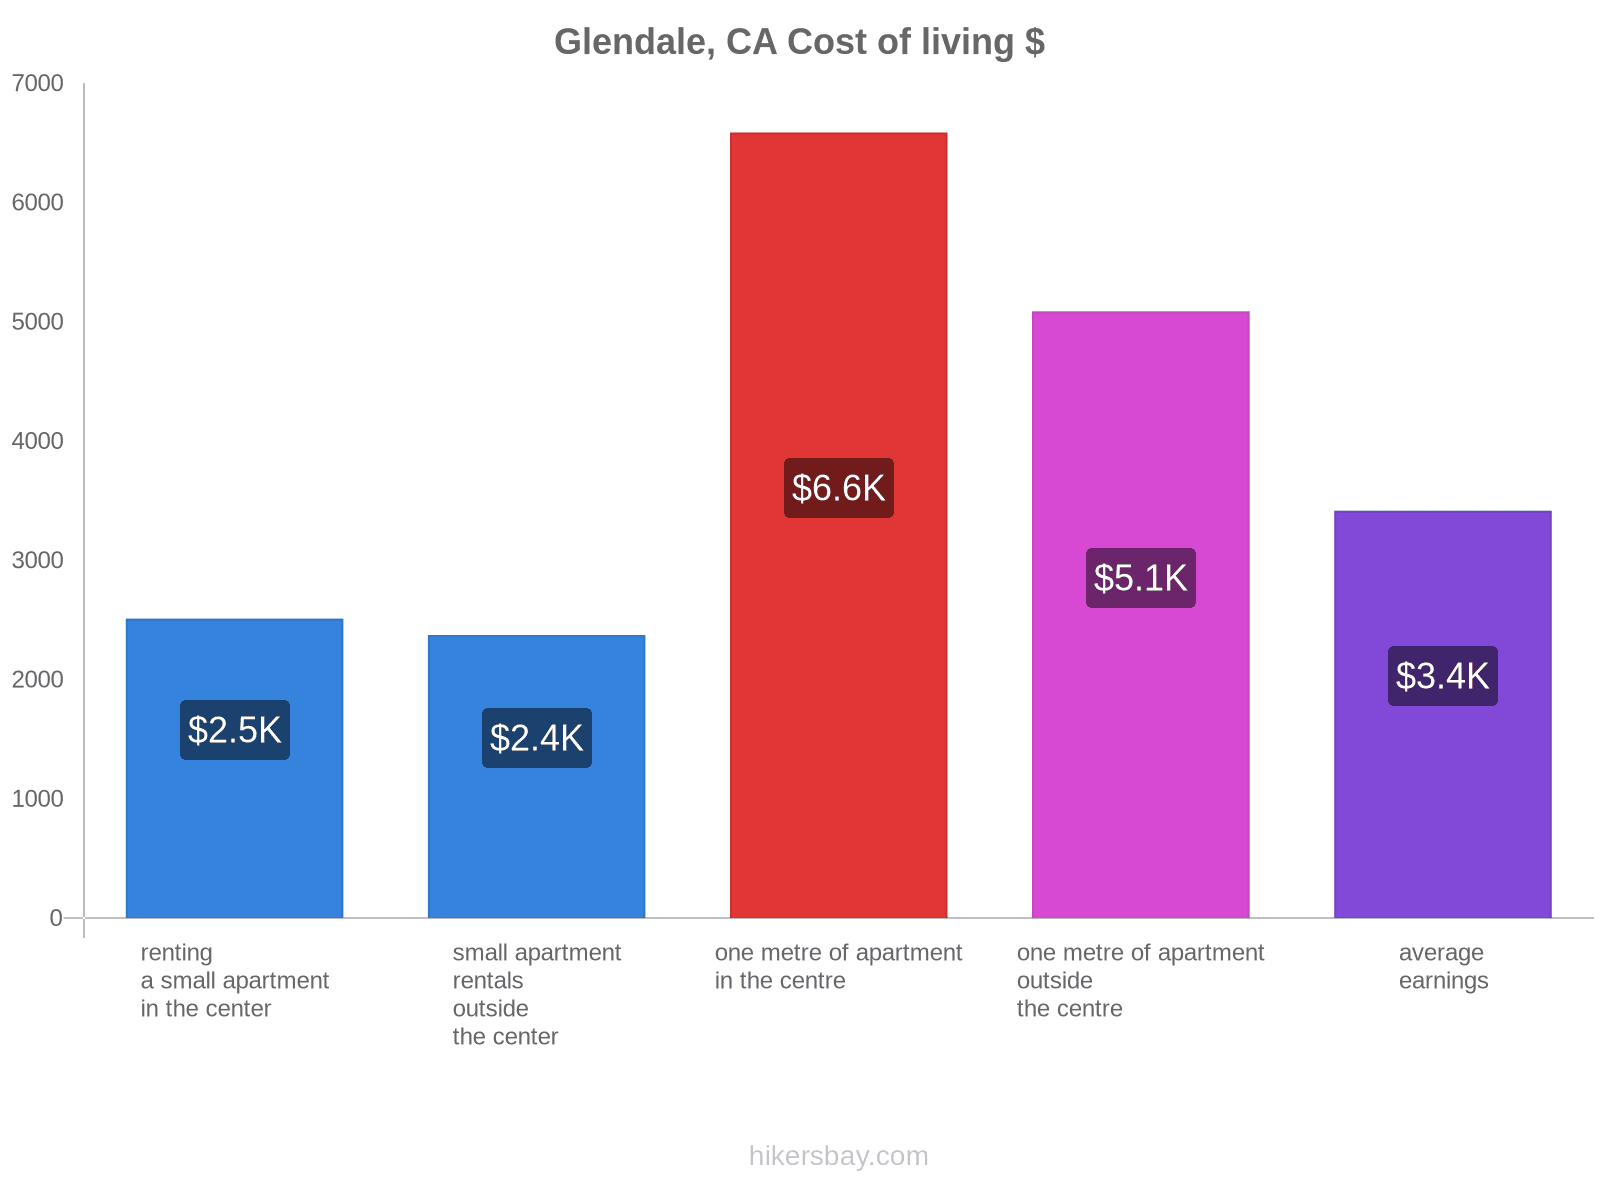 Glendale, CA cost of living hikersbay.com